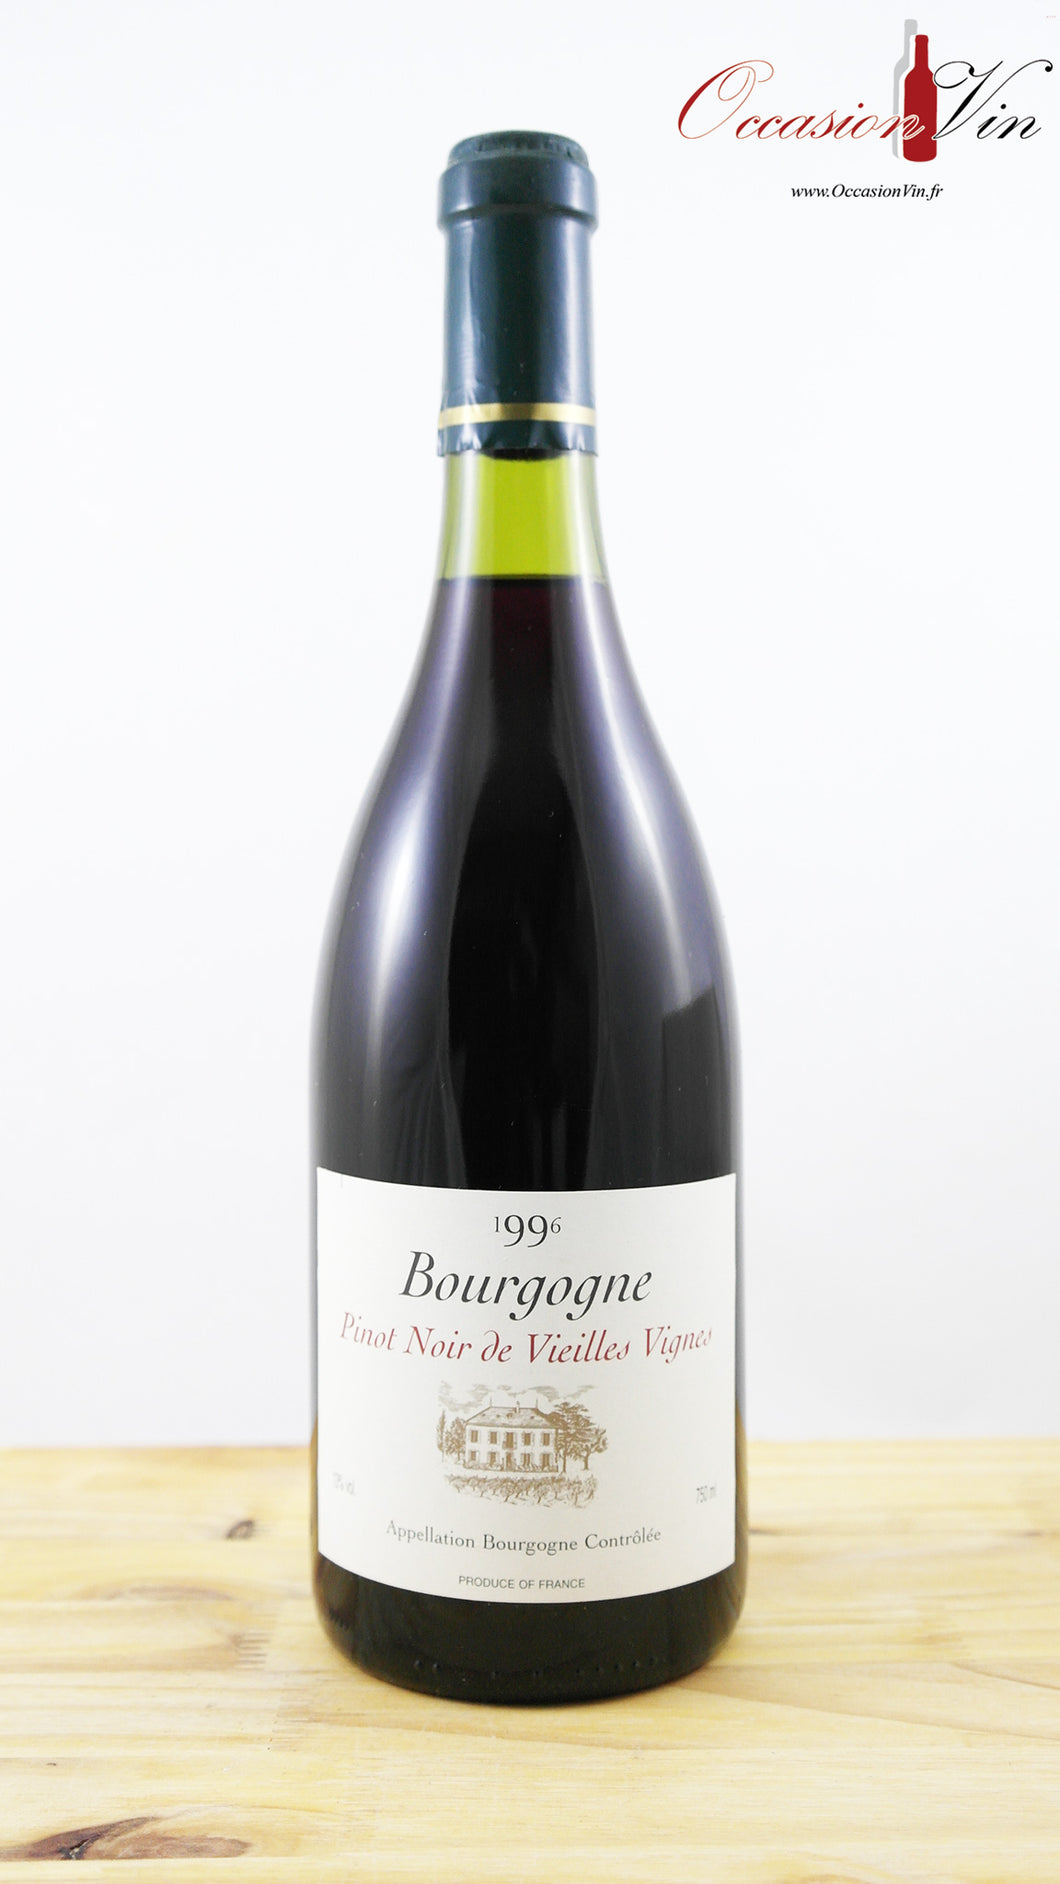 Pinot Noir Vieilles Vignes Vin 1996